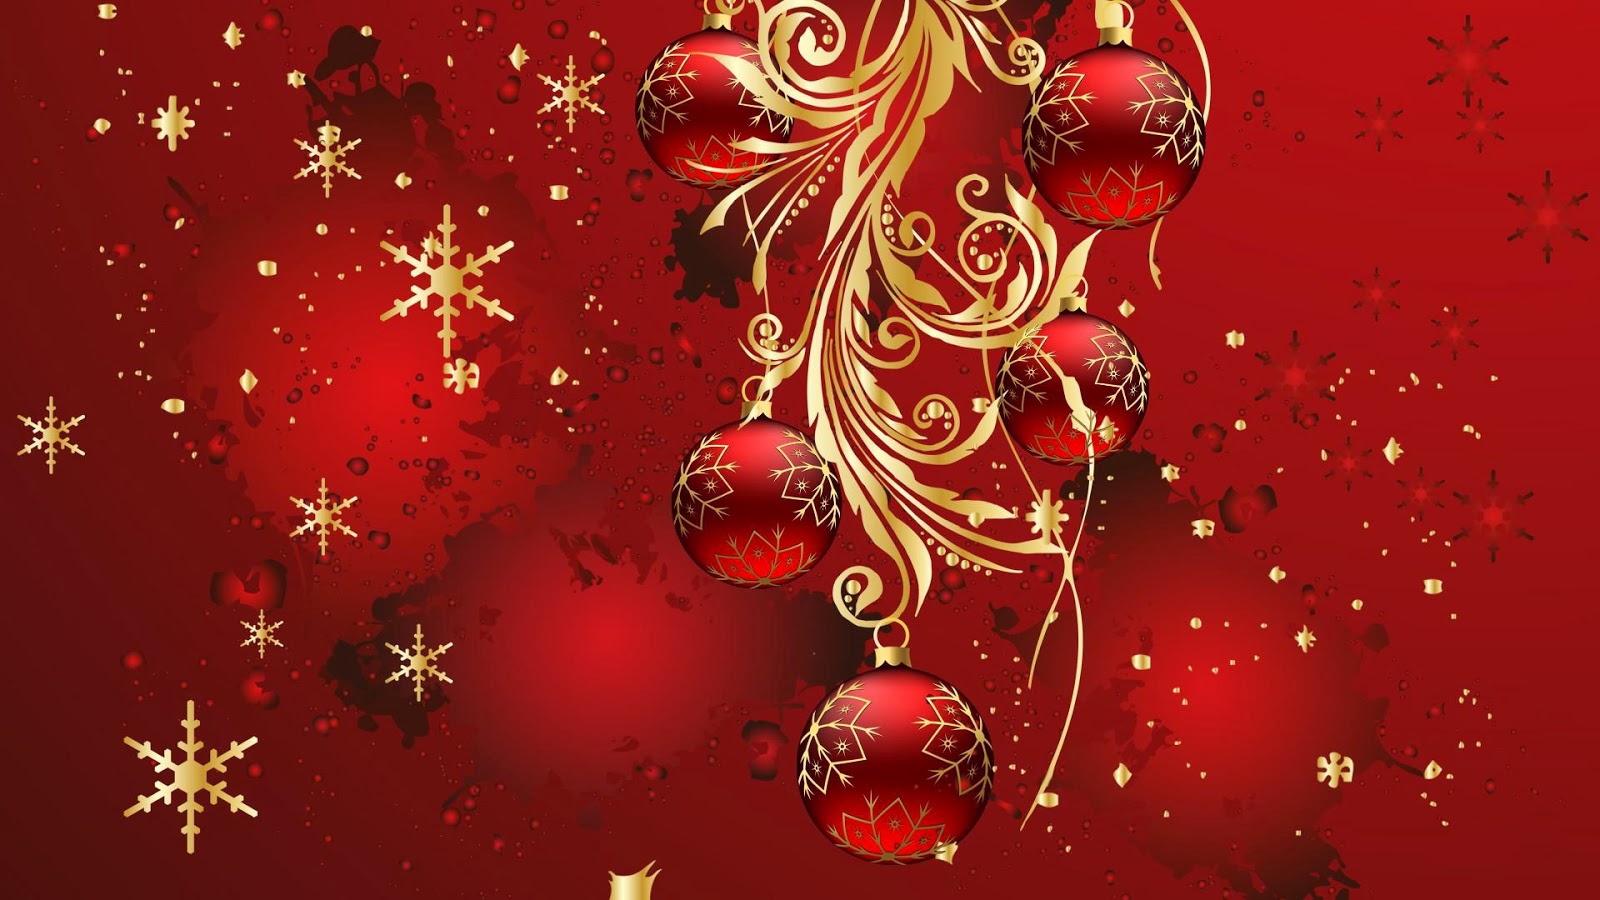 Imagenes De Navidad 2014 Gratis Postales Navide As Con Mensajes De Feliz Navidad Y Pr Spero A O Nuevo 2014 Gratis 2 